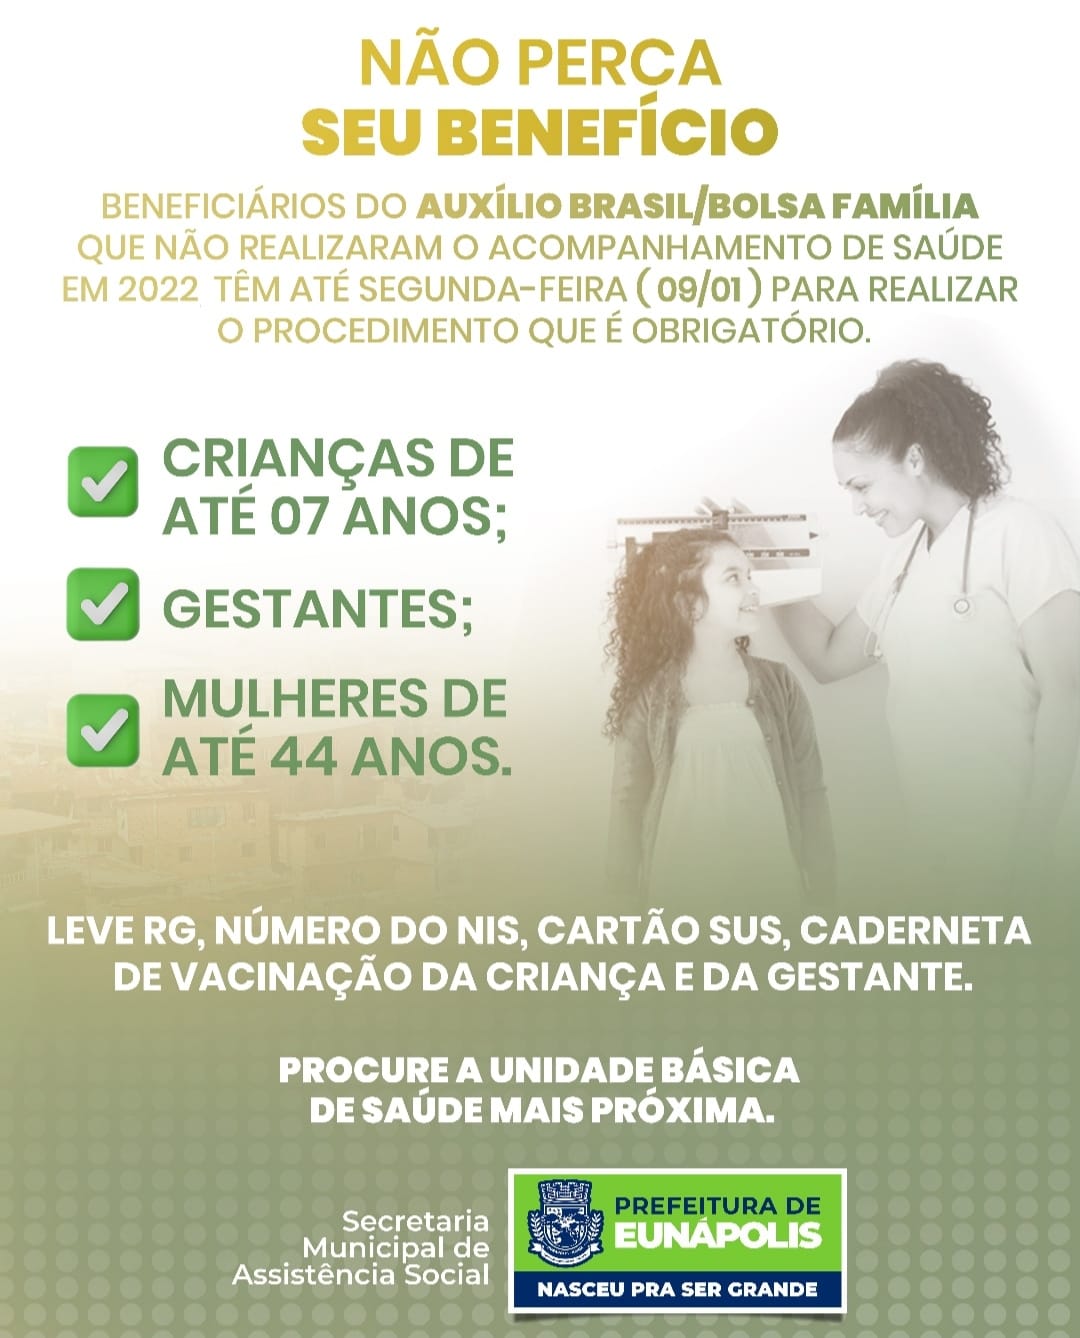 Beneficiários do Auxílio Brasil/ Bolsa Família devem realizar pesagem até esta segunda-feira 4